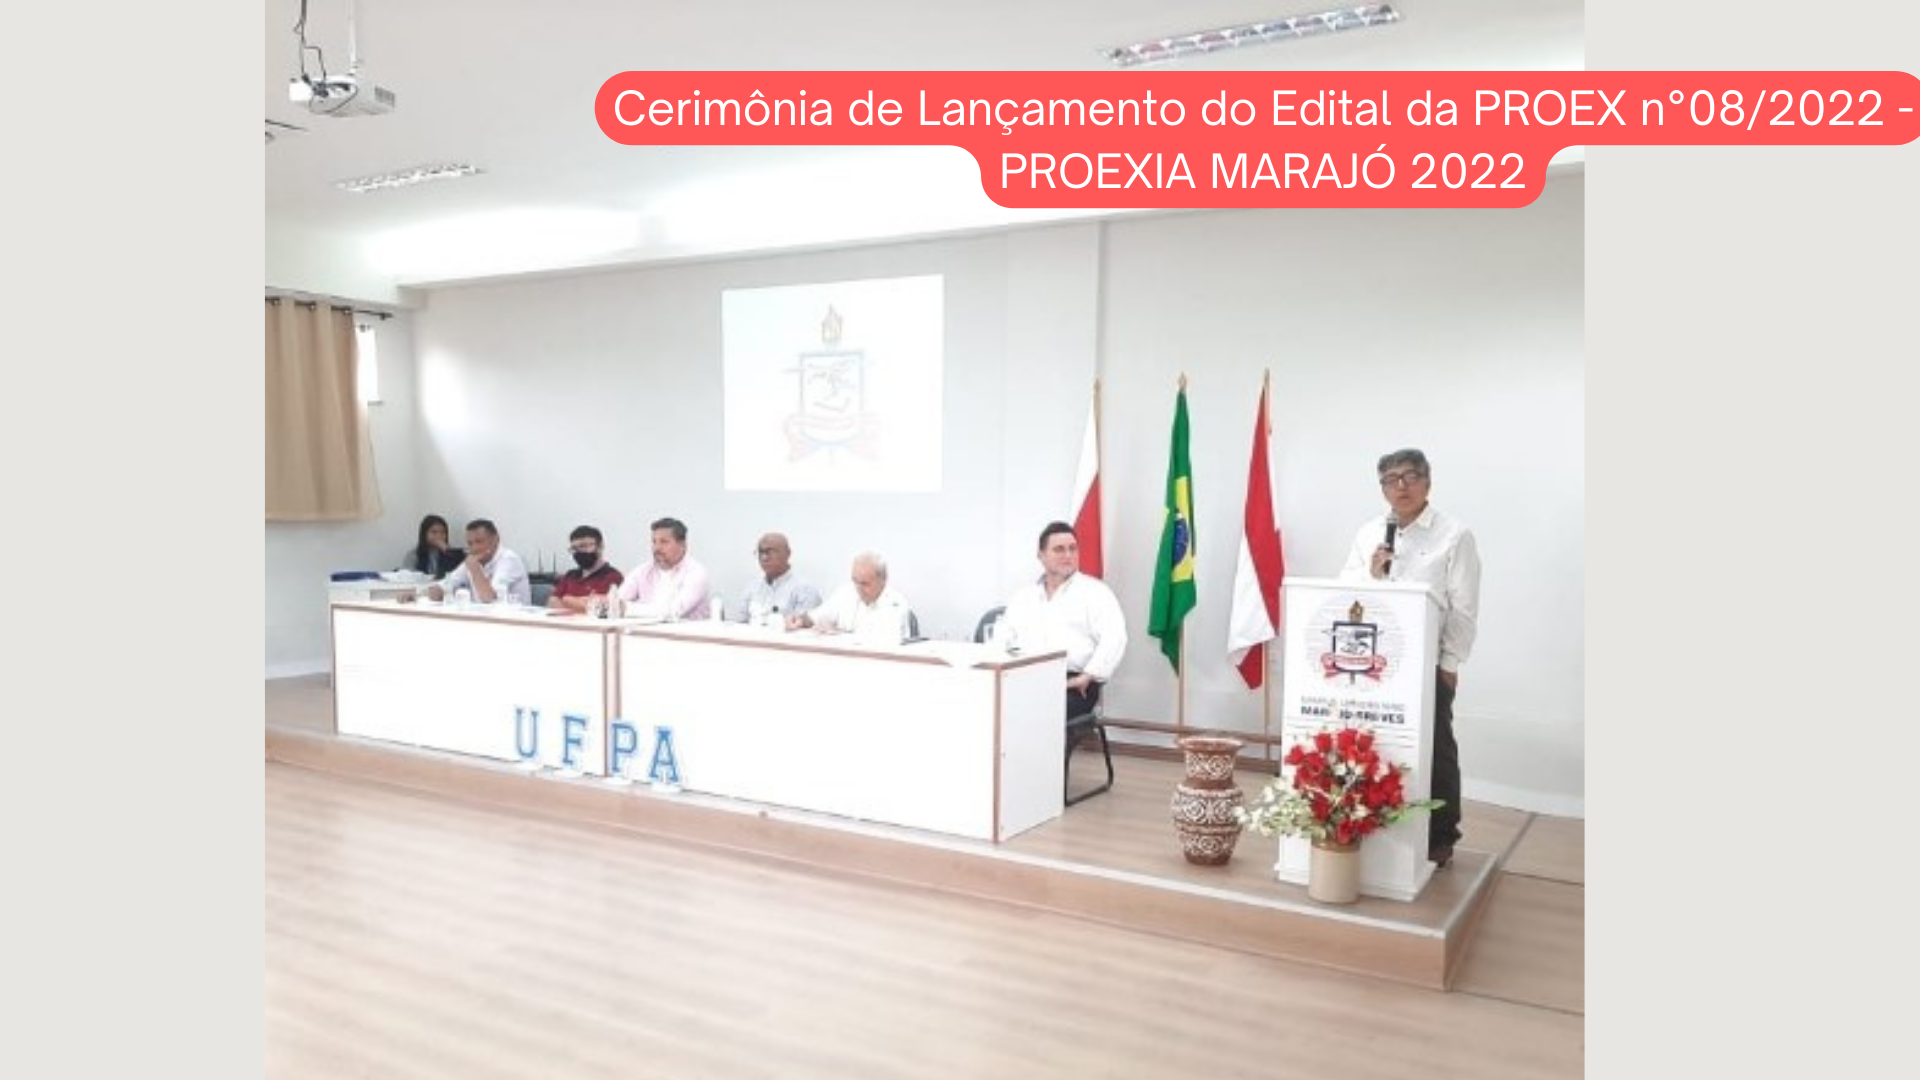 Cerimônia de Lançamento do Edital da PROEX n°08/2022 - PROEXIA MARAJÓ 2022